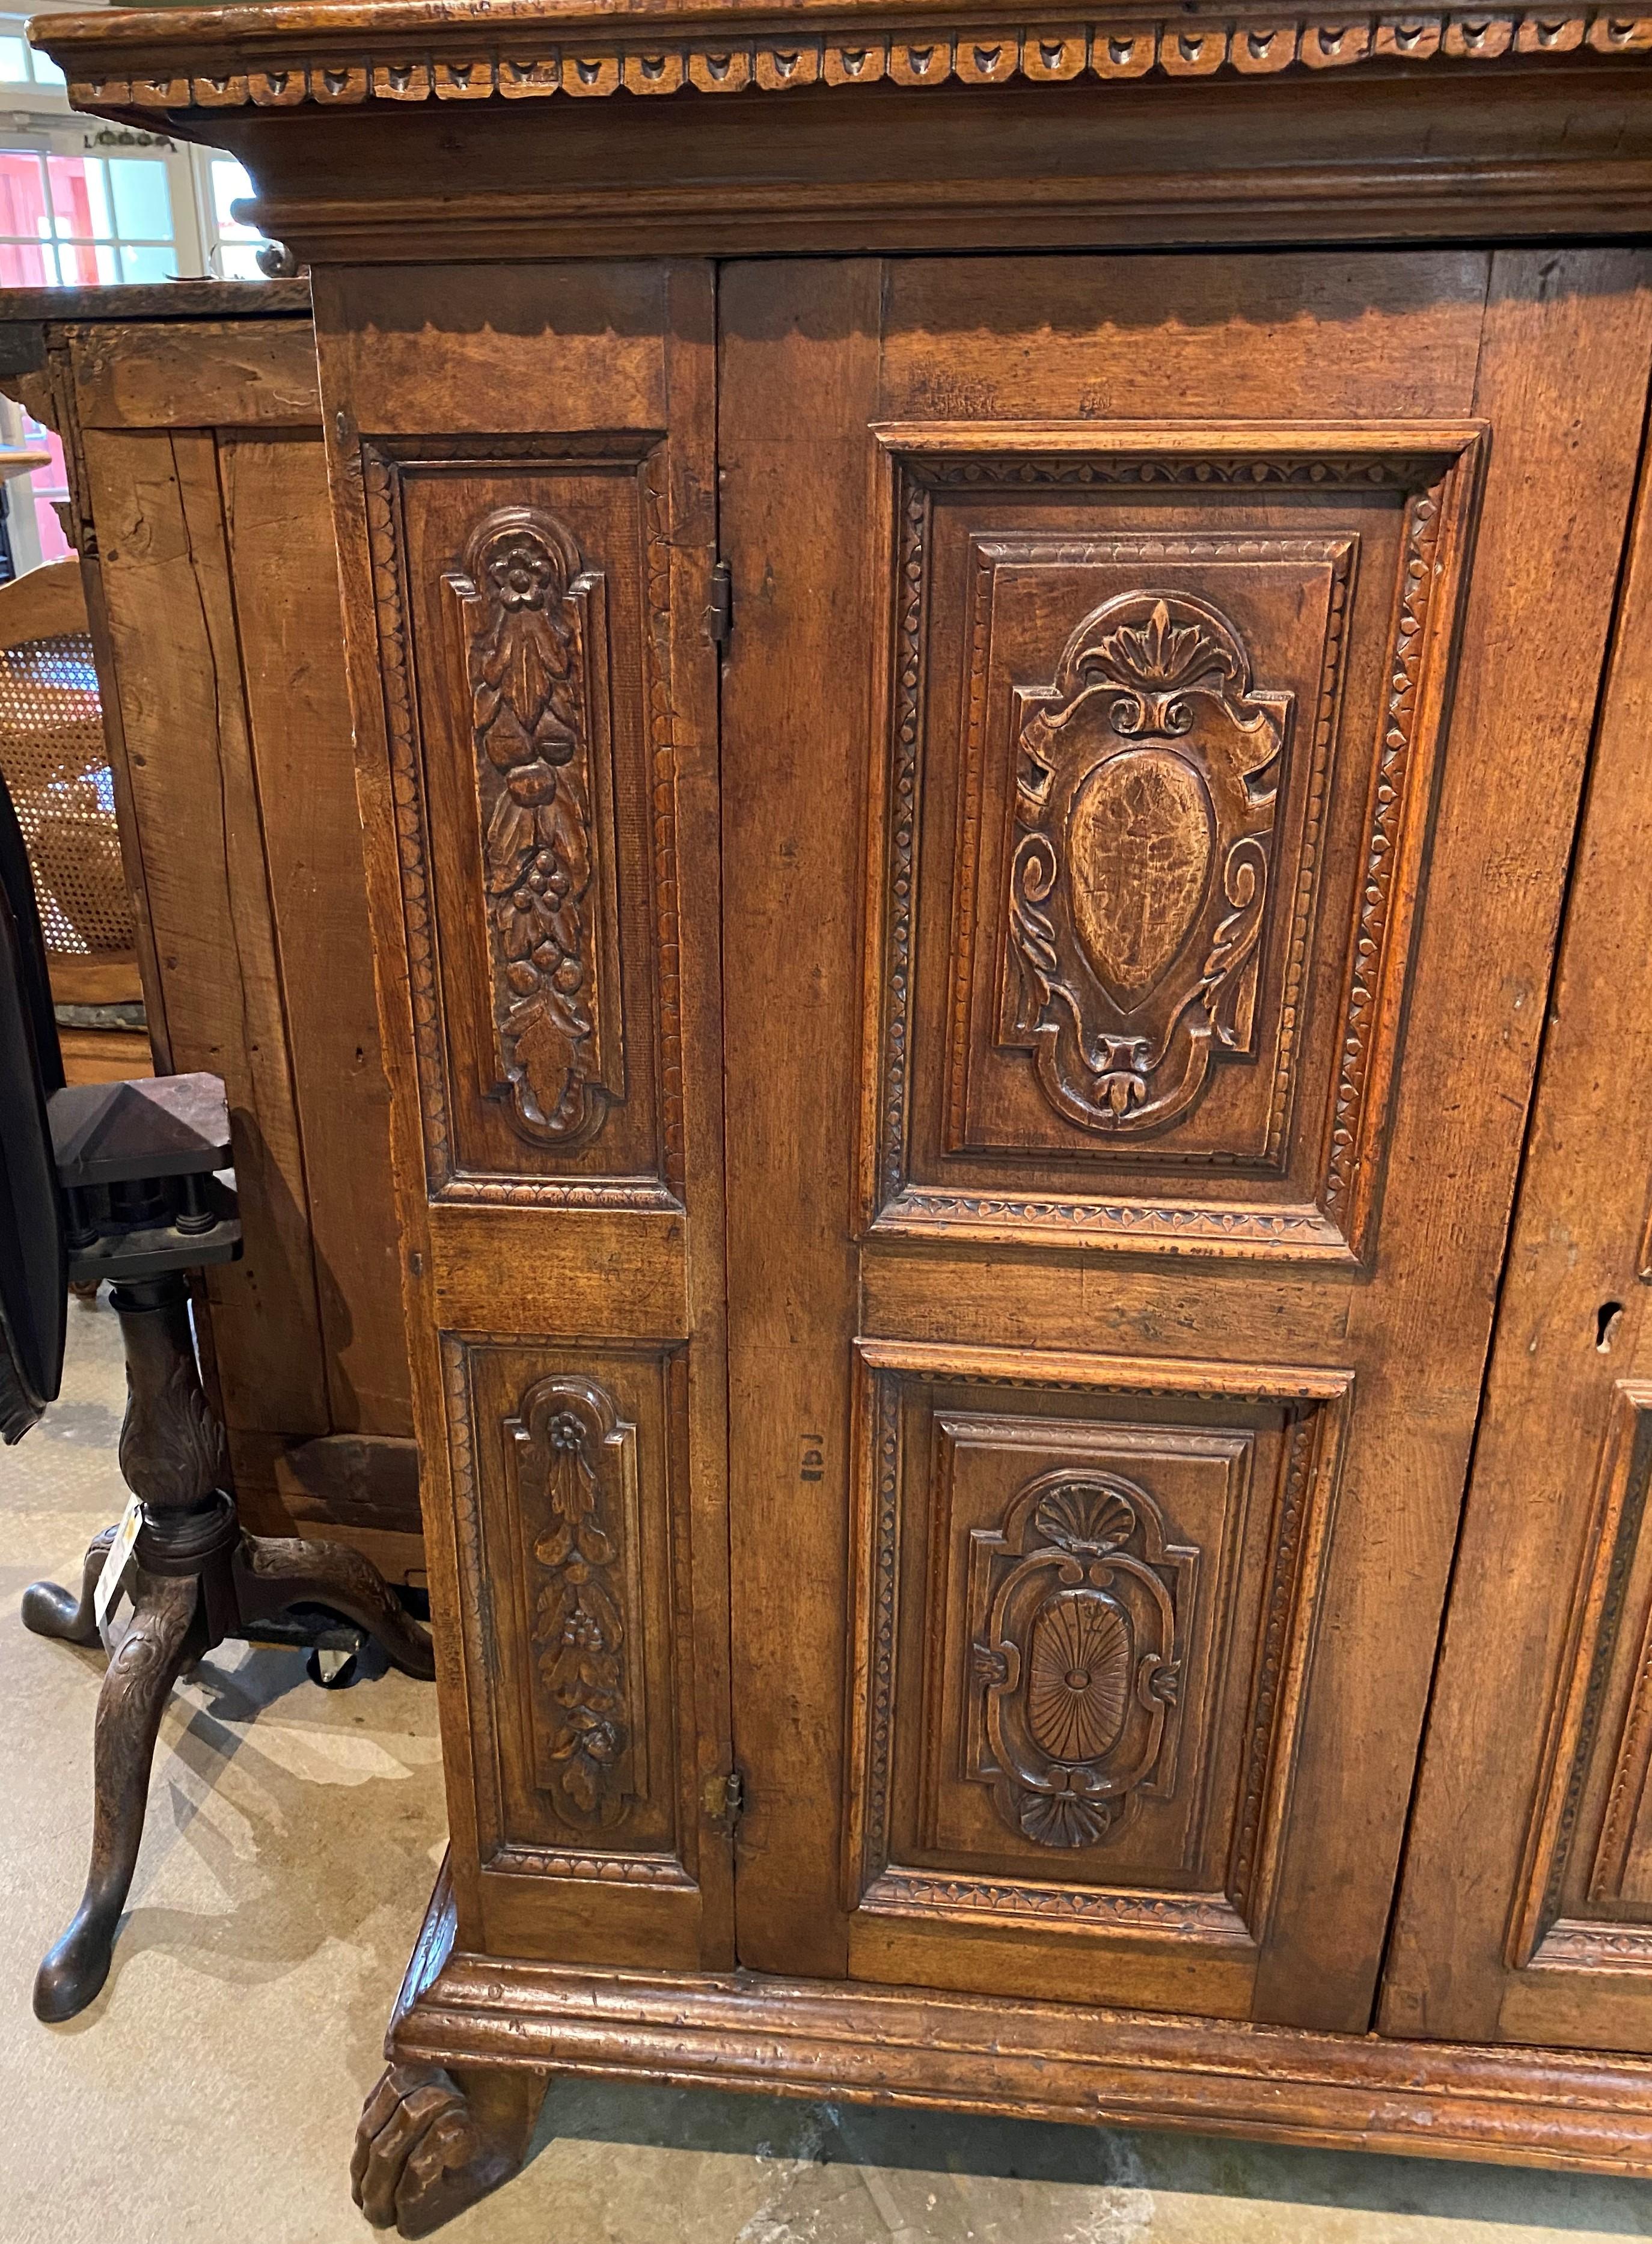 Un bel exemple de grand meuble en chêne sculpté de style baroque italien, avec une corniche moulée et une moulure en denticule surmontant une caisse avec deux portes dotées de panneaux en relief sculptés de feuillages, qui s'ouvrent sur un